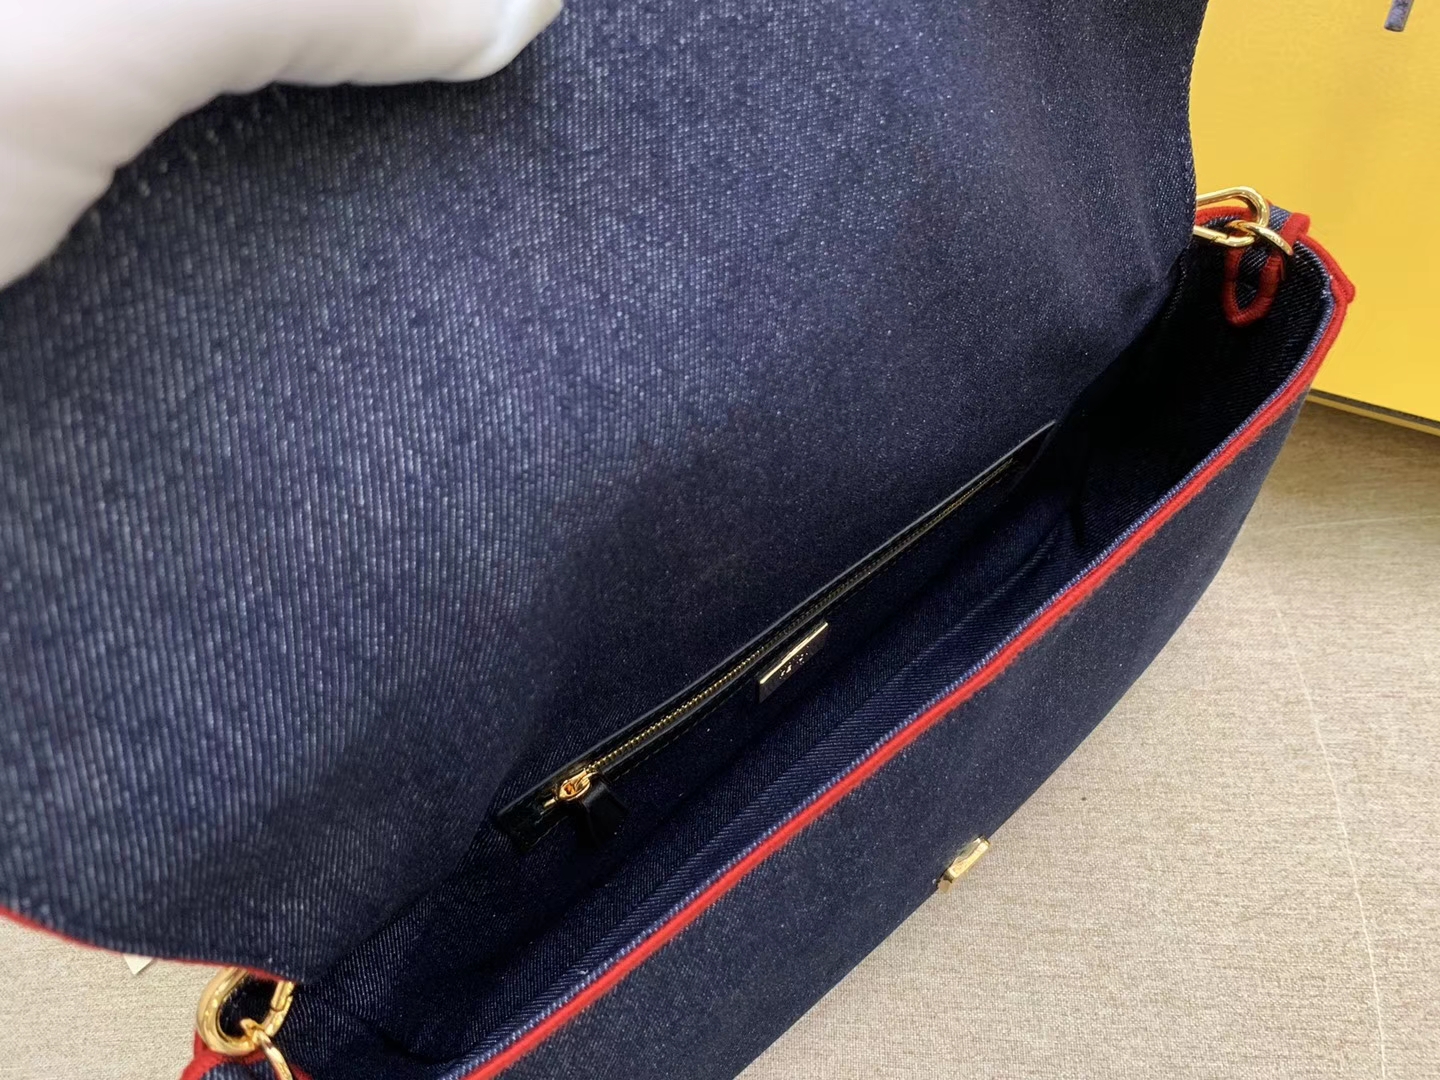 Baguette 系列 牛仔布材质 红色刺绣边缘 内衬配有拉链袋 33x18x5.5cm